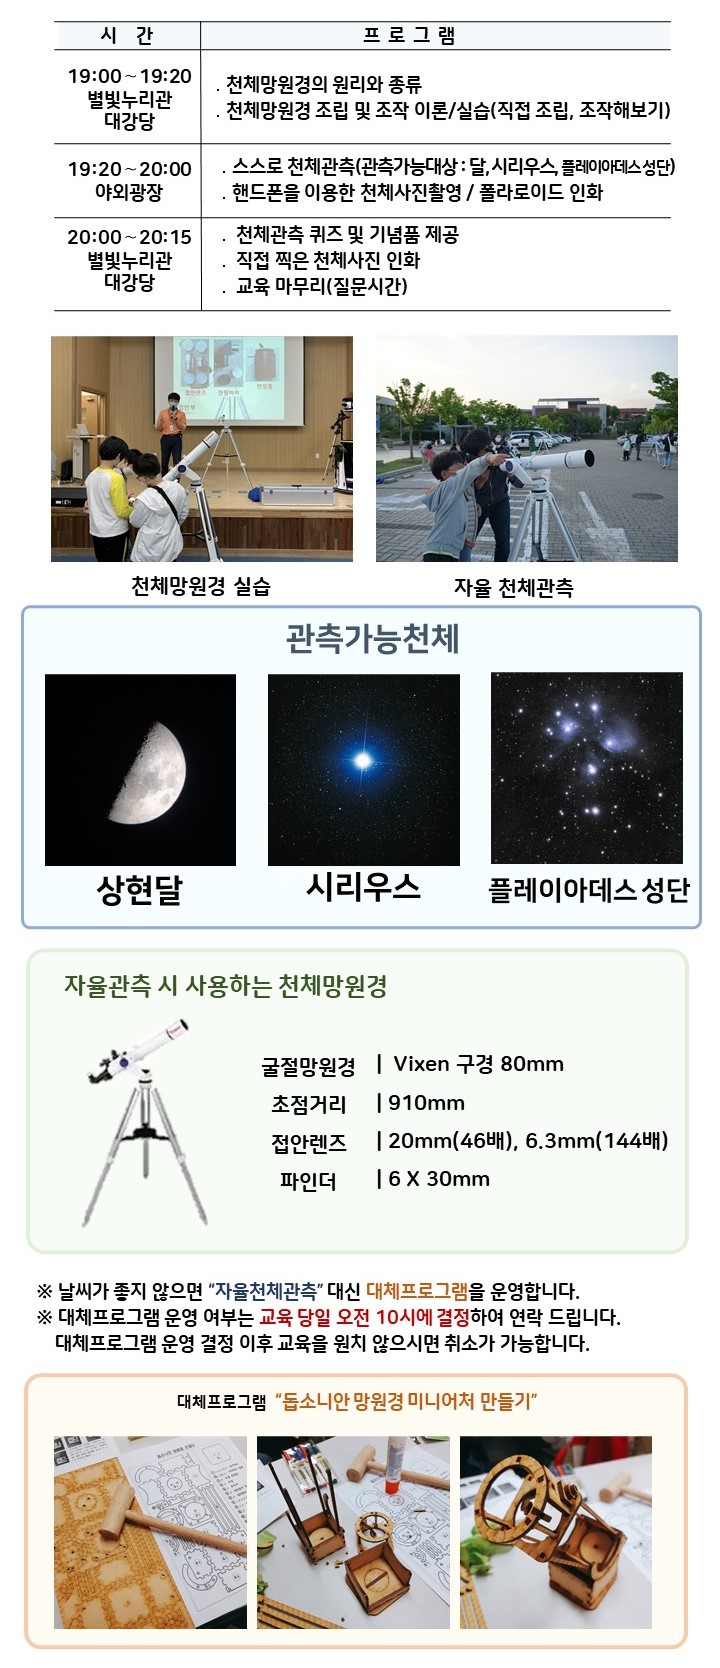  관측대장 시간 및 프로그램 | 19:00～19:20 별빛누리관 대강당 ․천체망원경의 원리와 종류, 천체망원경 조립 및 조작 이론/실습(직접 조립, 조작해보기) |19:20～20:00 야외광장 ․스스로 천체관측(관측가능대상 : 달,  시리우스,  플레이아데스 성단) ․핸드폰을 이용한 천체사진촬영 / 사진 인화|  20:00~20:15, 별빛누리관 대강당 : 천체관측 퀴즈 및 기념품 제공, 직접 찍은 천체사진 인화, 교육마무리(질문시간)| 천체망원경 실습(천체망원경 실습하는 사진) |자율 천체관측(관람객이 자율적으로 천체관측하는 모습)|관찰가능한 천체 상현달(상현달 사진), 시리우스(시리우스 사진), 플레이아데스 성단(플레이아데스 성단 사진) |자율관측 시 사용하는 천체 망원경(천체망원경 사진),  굴절망원경 Vixen 구경 80mm 초점거리 910mm 접안렌즈 20mm(46배), 6.3mm(144배) 파인더 6 X 30mm| ※ 날씨가 좋지 않으면 “자율천체관측” 대신 대체프로그램을 운영합니다.  ※ 대체프로그램 운영 여부는 교육 당일 오전 10시에 결정하여 연락 드립니다. 대체프로그램 운영 결정 이후 교육을 원치 않으시면 취소가 가능합니다.| 대체프로그램 '돕소니안 망원경 미니어처 만들기(돕소니안 망원경 미니어처 만들기 재료사진, 돕소니안 망원경 미니어처 만들기 제작과정 사진, 돕소니안 망원경 미니어처 만들기 완성품 사진)' 